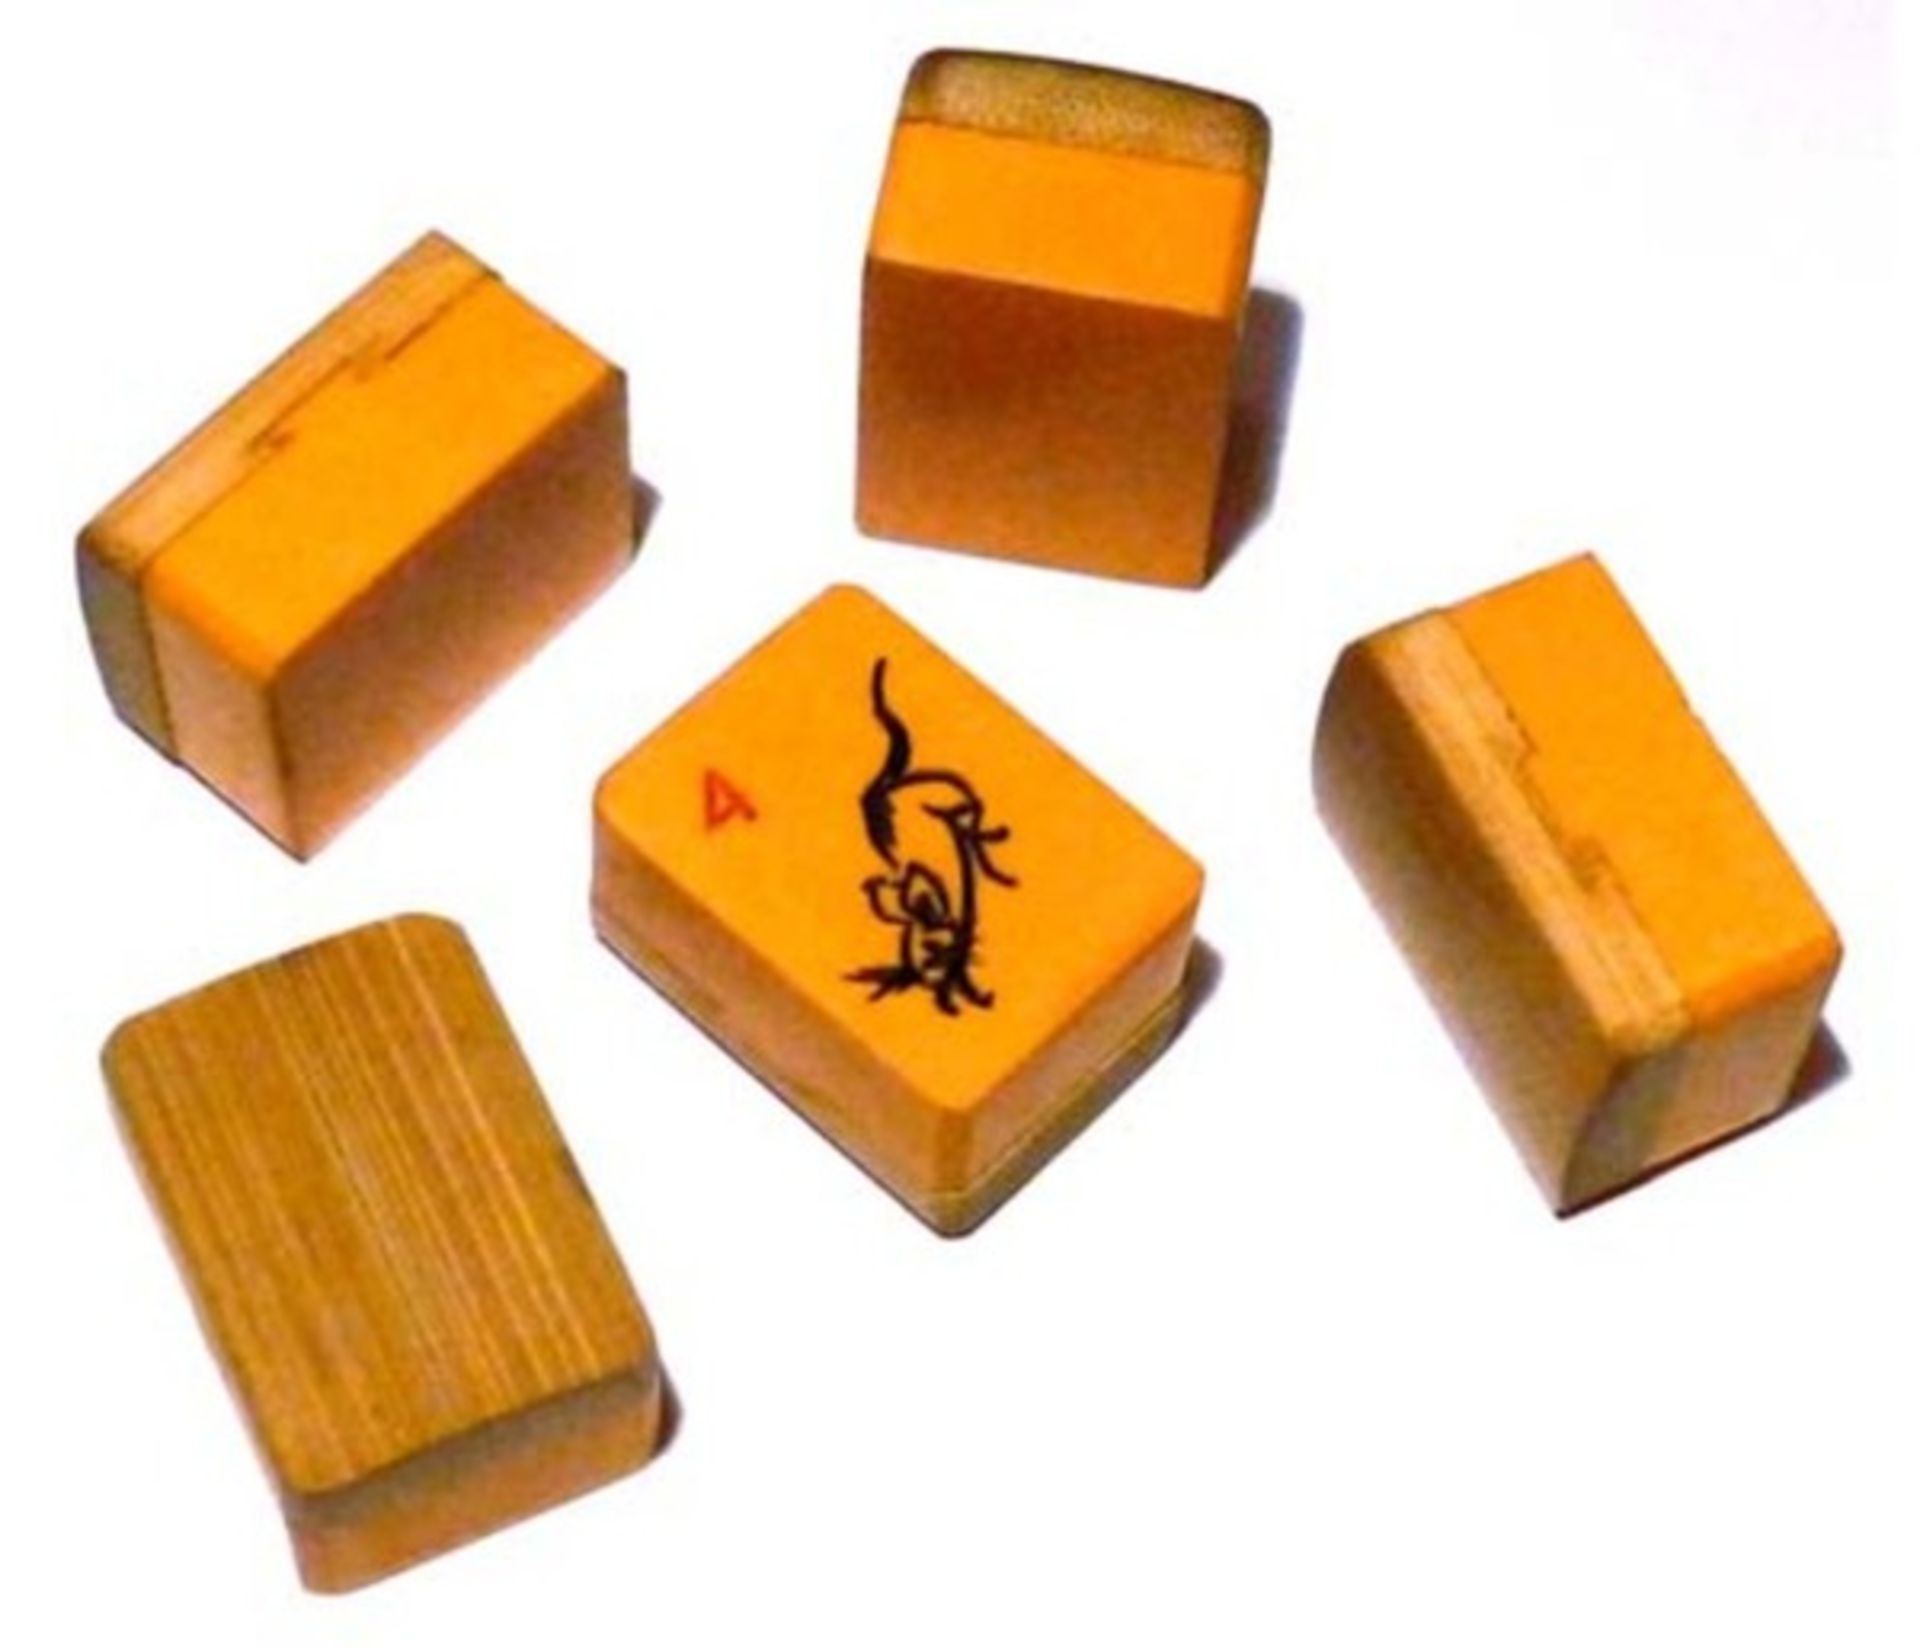 (Mahjong) Mahjong kunststof, stenen van kunststof en bamboe, ca. 1935 - Bild 3 aus 13